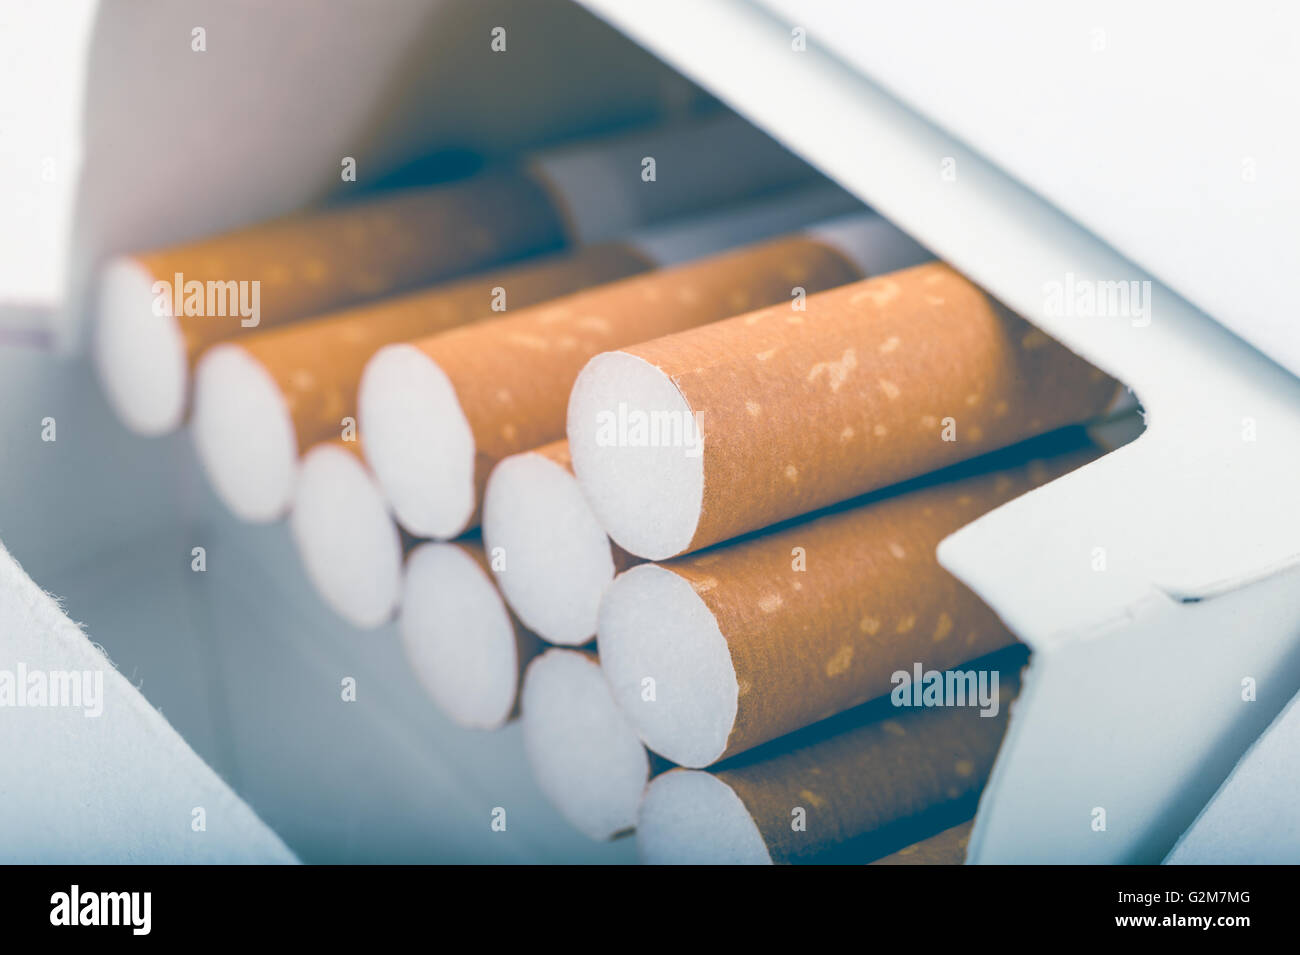 Vista laterale di un pacchetto di sigarette con filtro sbiadito Foto Stock